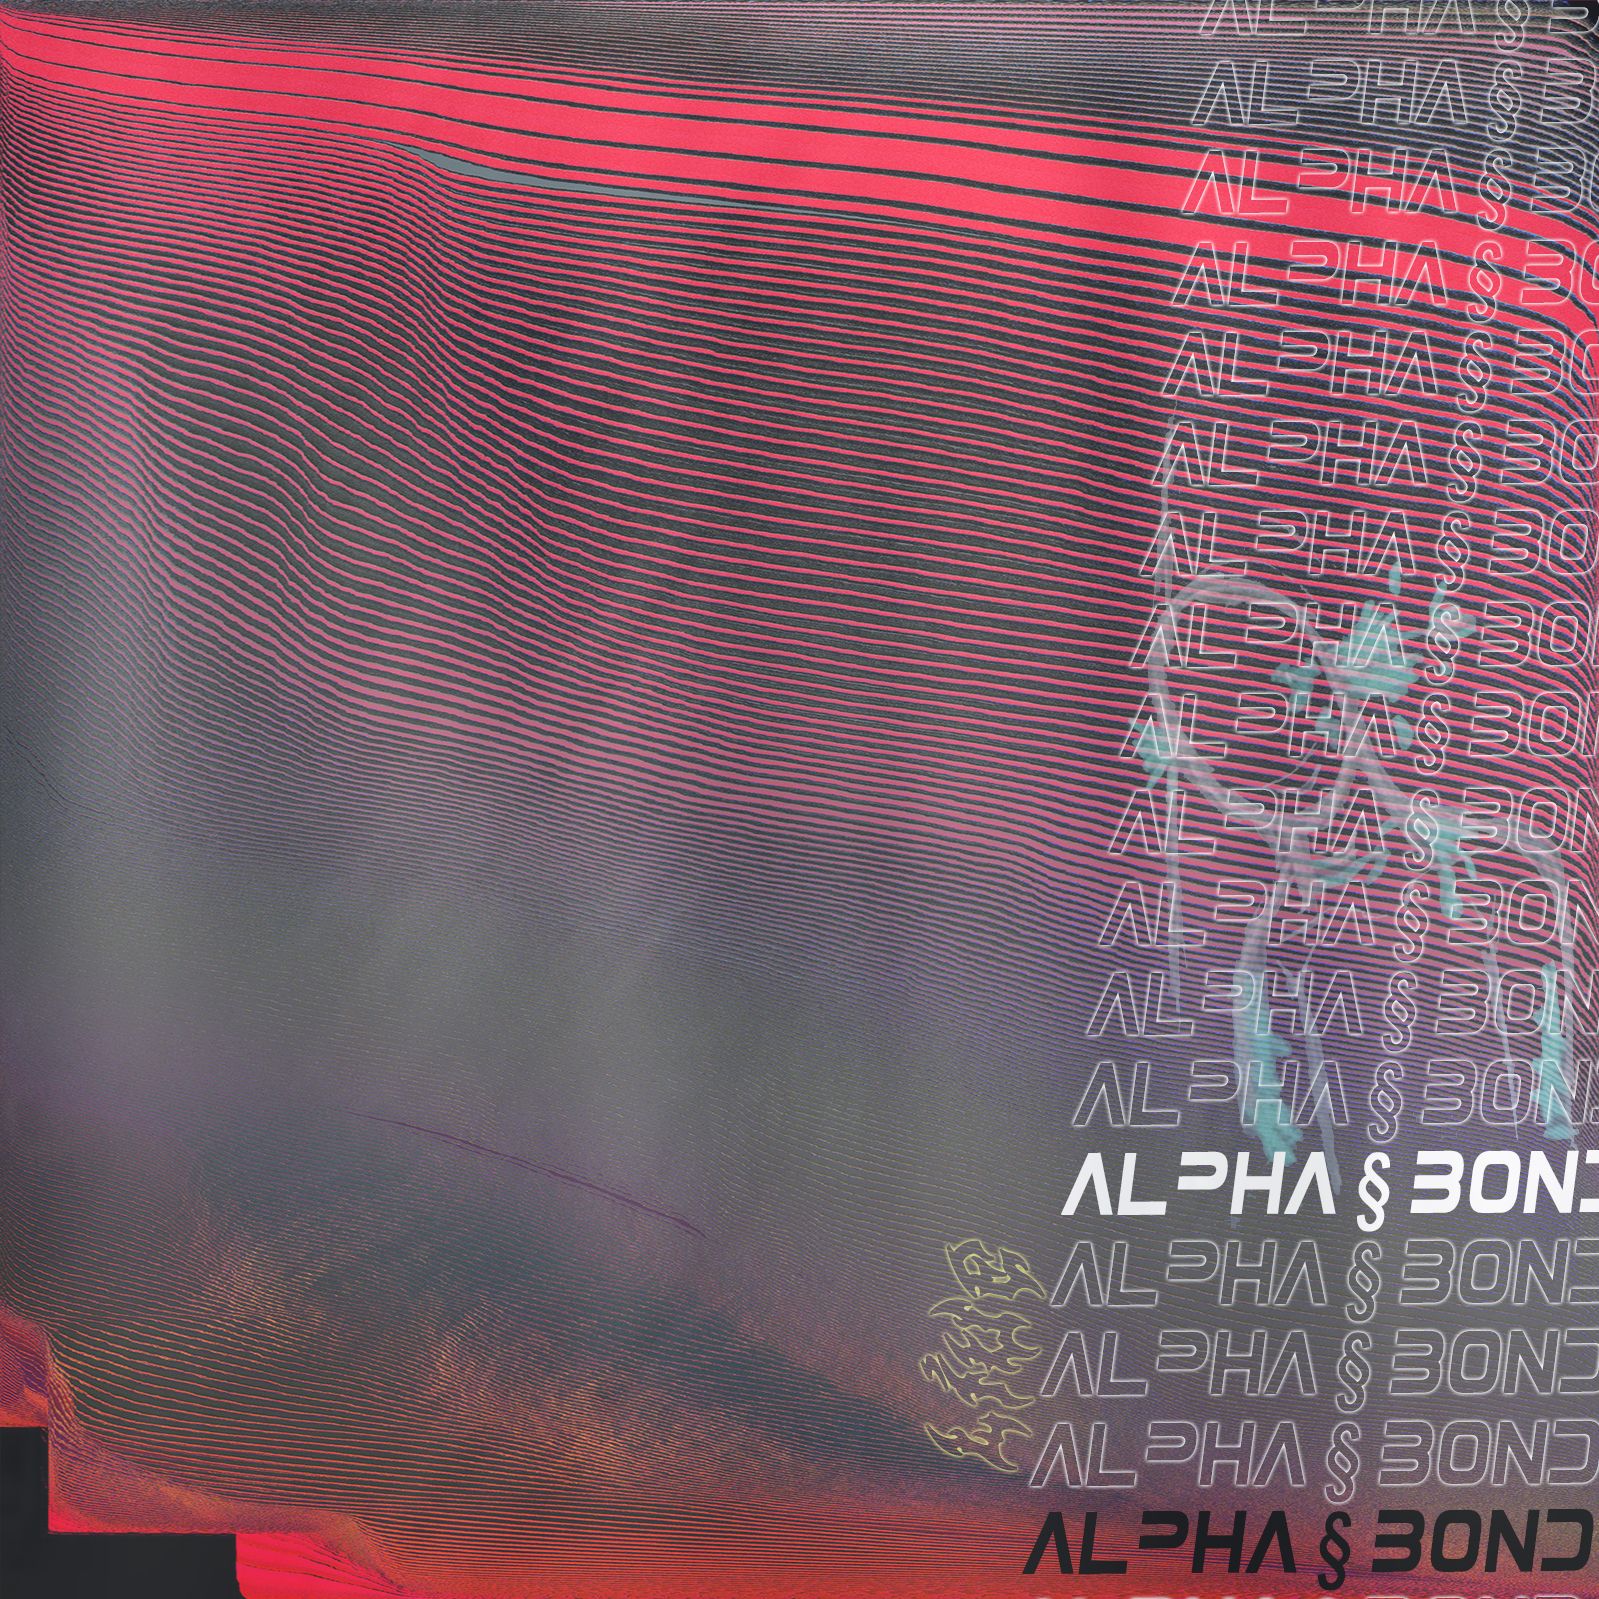 Descarca alpha § bond